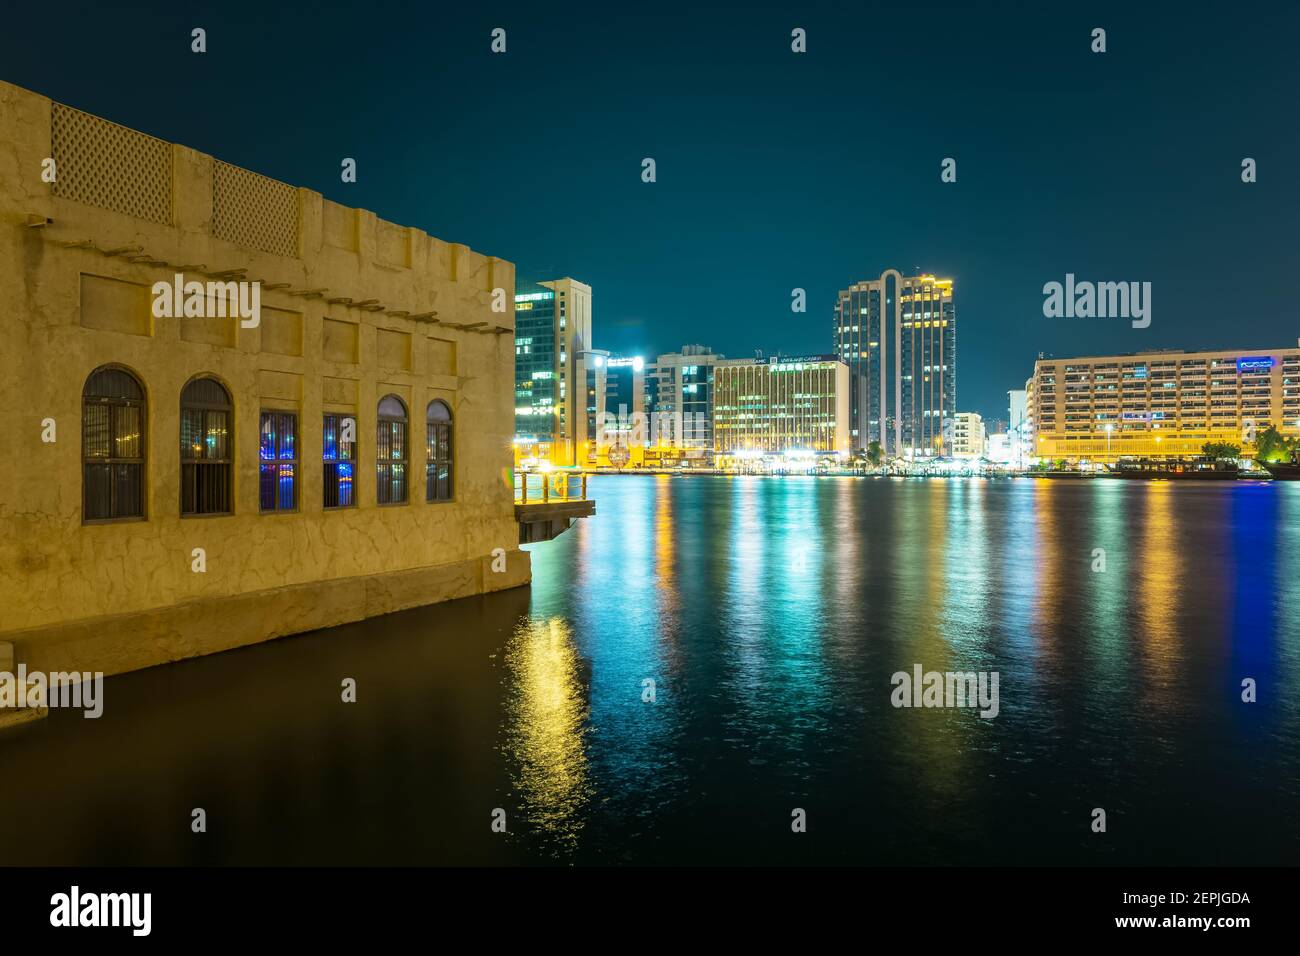 Dubai, EAU, 23 de noviembre de 2020: Al Seef Dubai Creek por la noche. Transporte público de agua que conecta varios distritos como Business Bay y Marina. Foto de stock